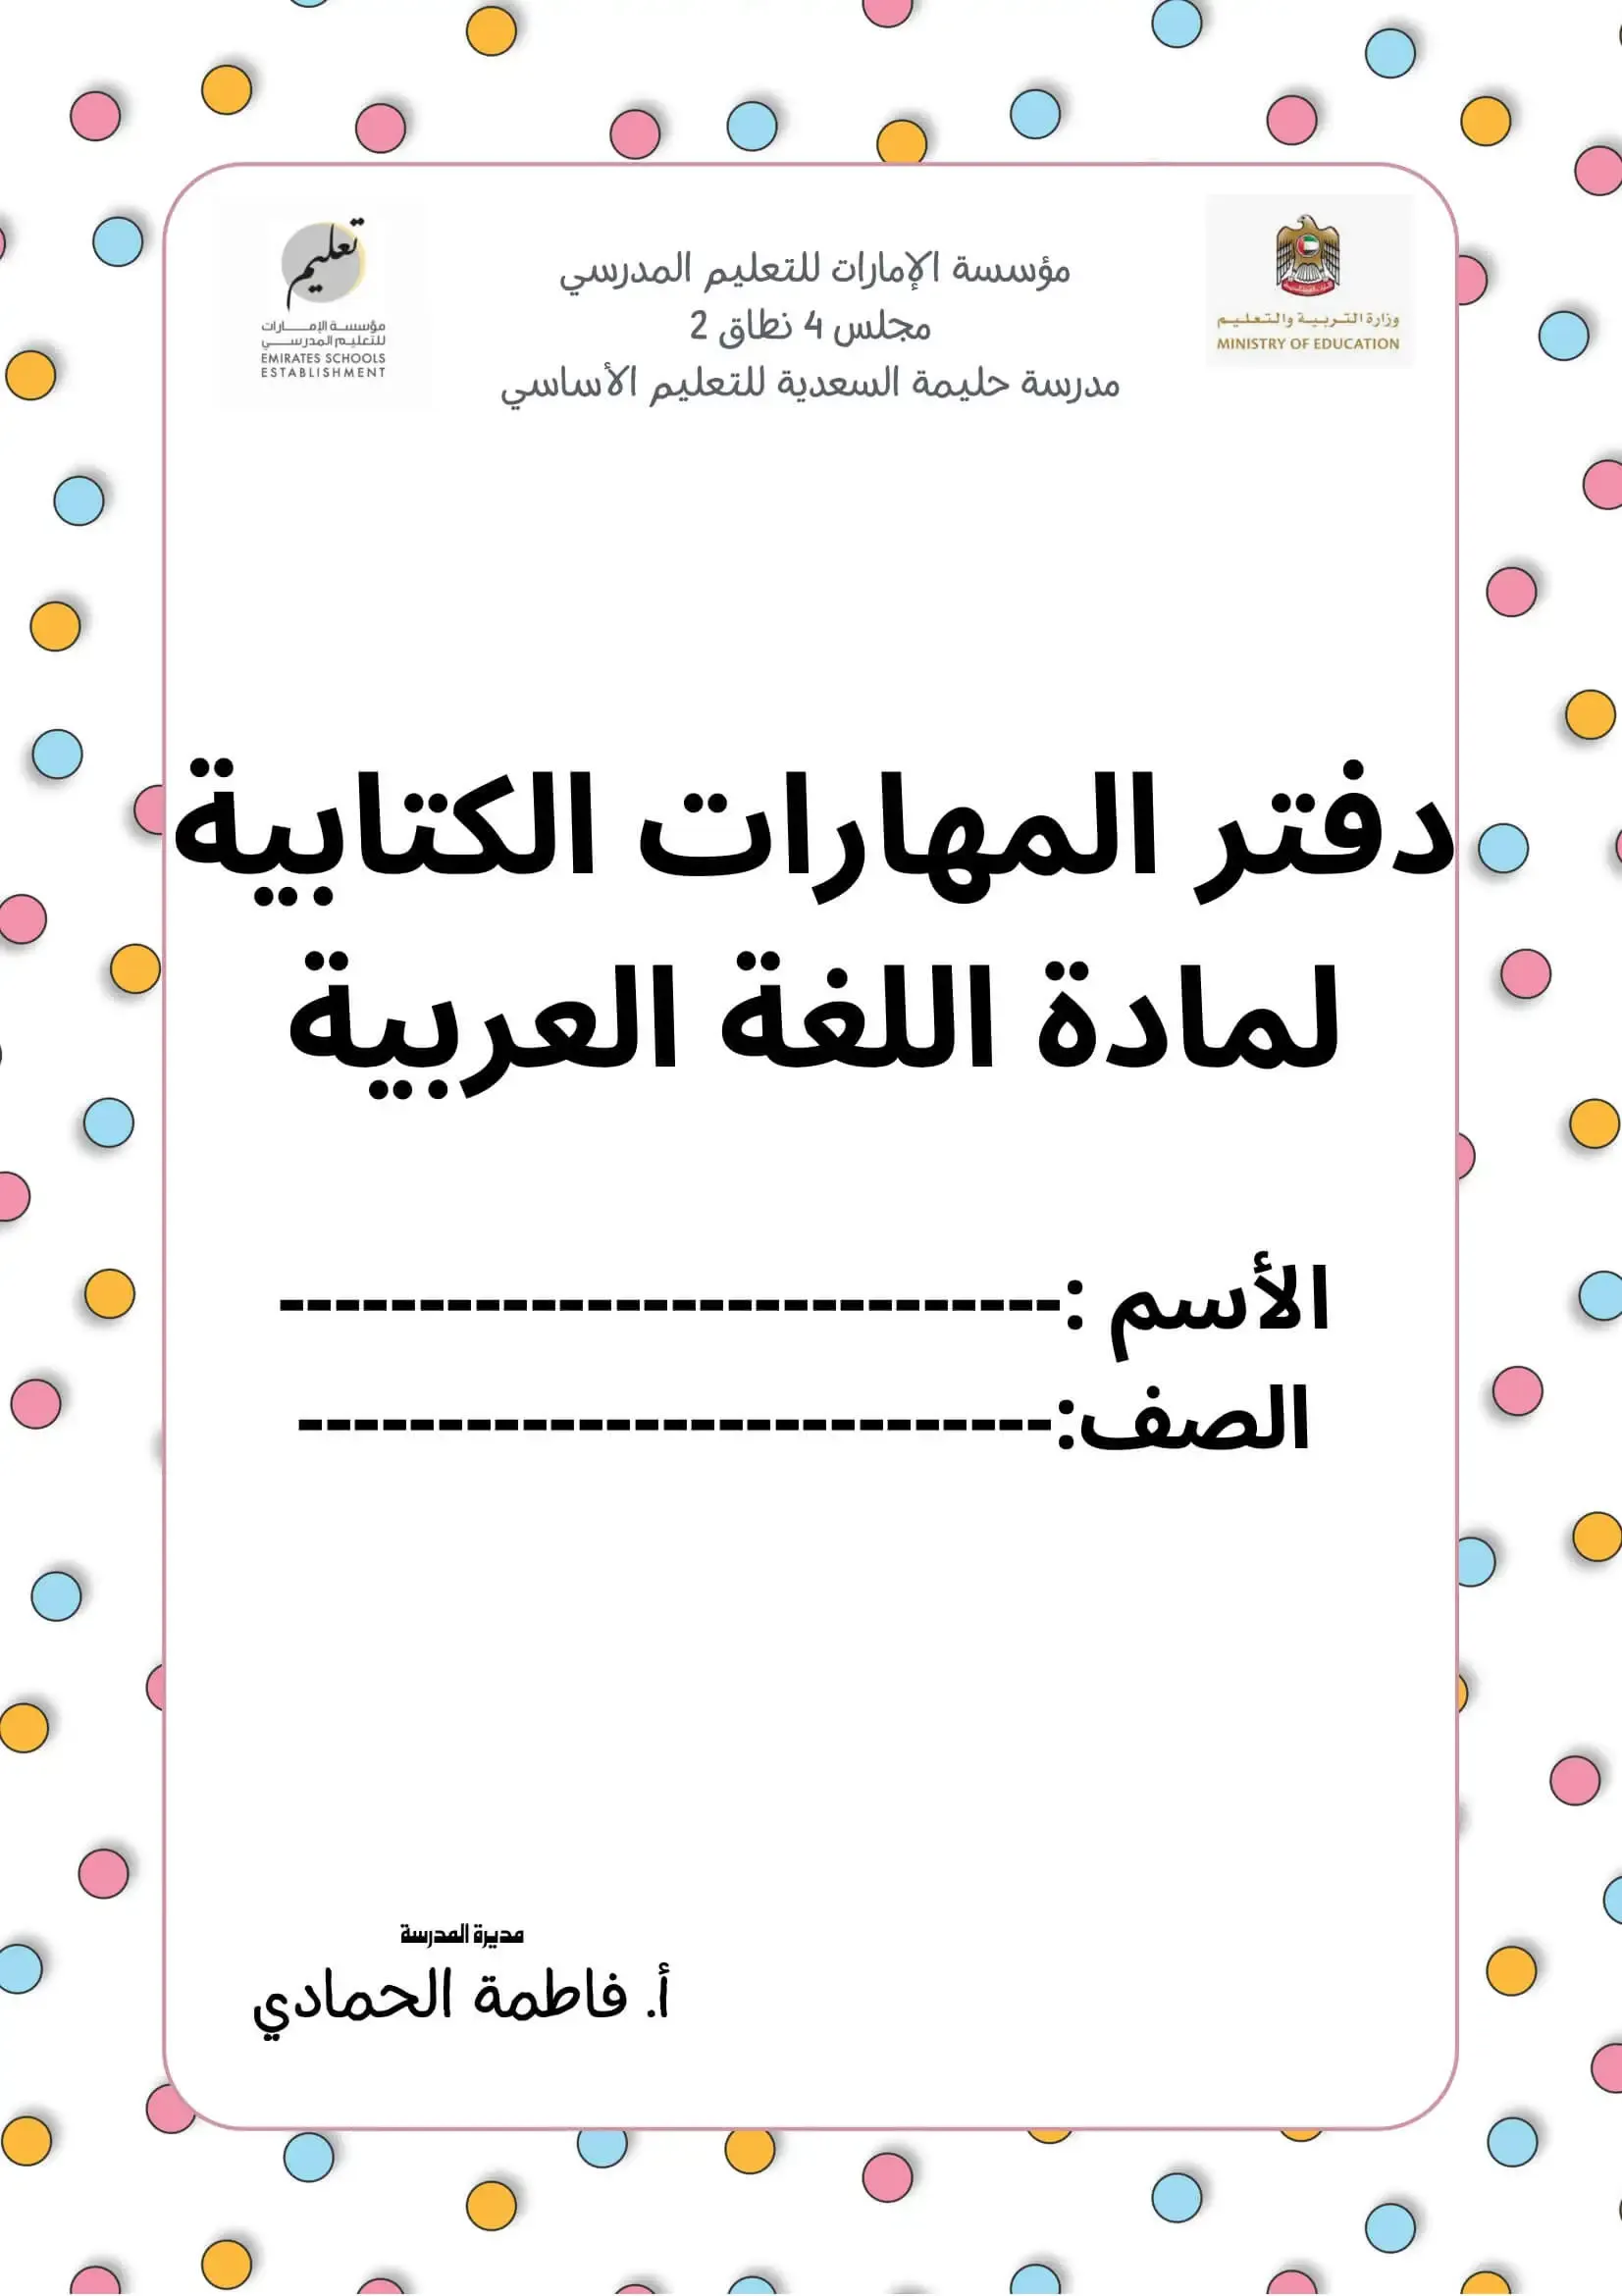 دفتر المهارات القرائية والكتابية لمادة اللغة العربية pdf تحميل مباشر مجاني